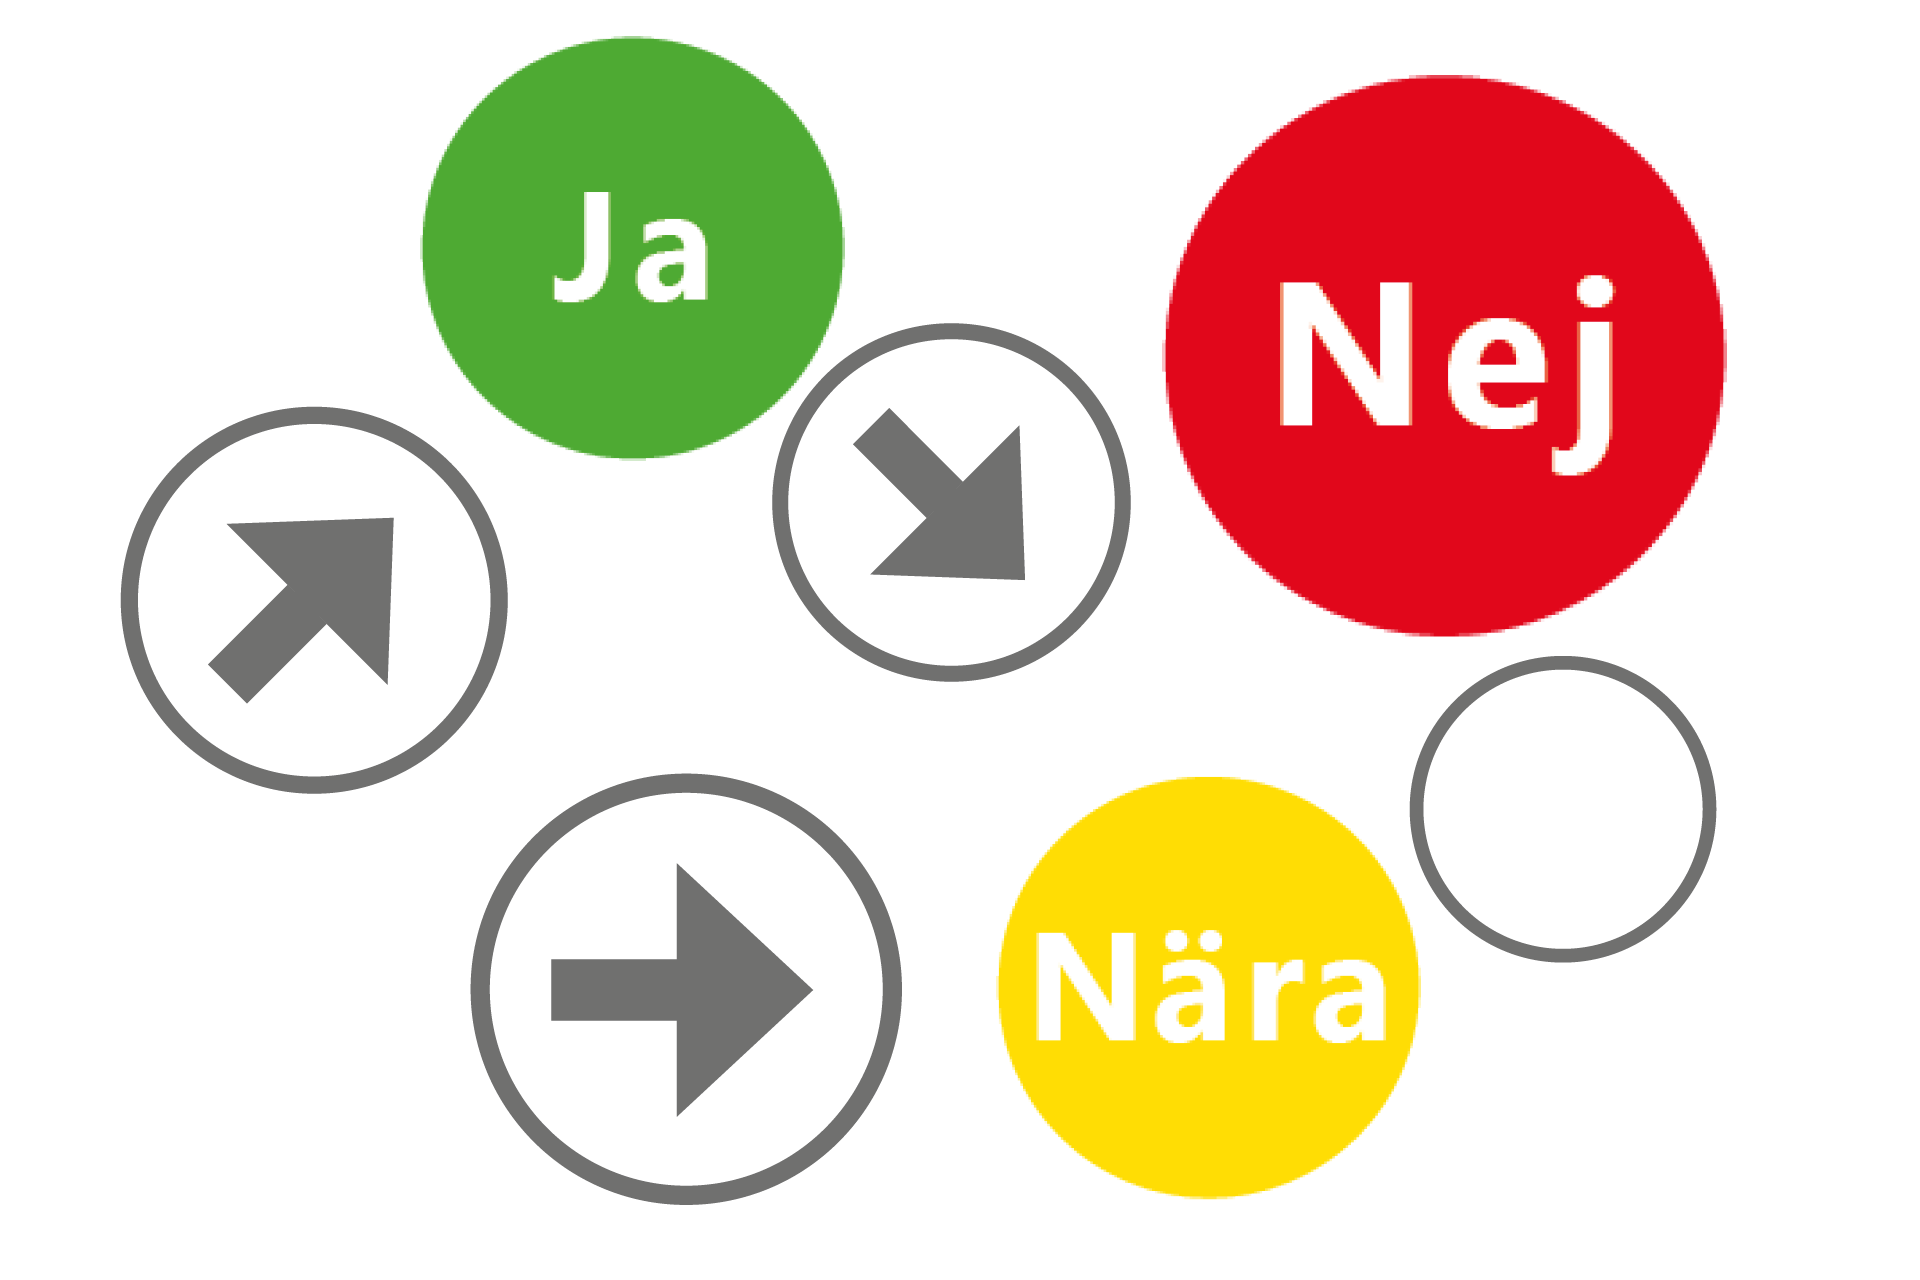 Fyra gråa cirklar, där en innehåller en pil som pekar snett uppåt, en har en pil som pekar snett nedåt, en en pil som pekar rakt åt höger, och en ingen pil alls. En röd fylld cirkel med vit text Nej, en grön fylld cirkel med vit text Ja, en gul fylld cirkel med vit text Nära.